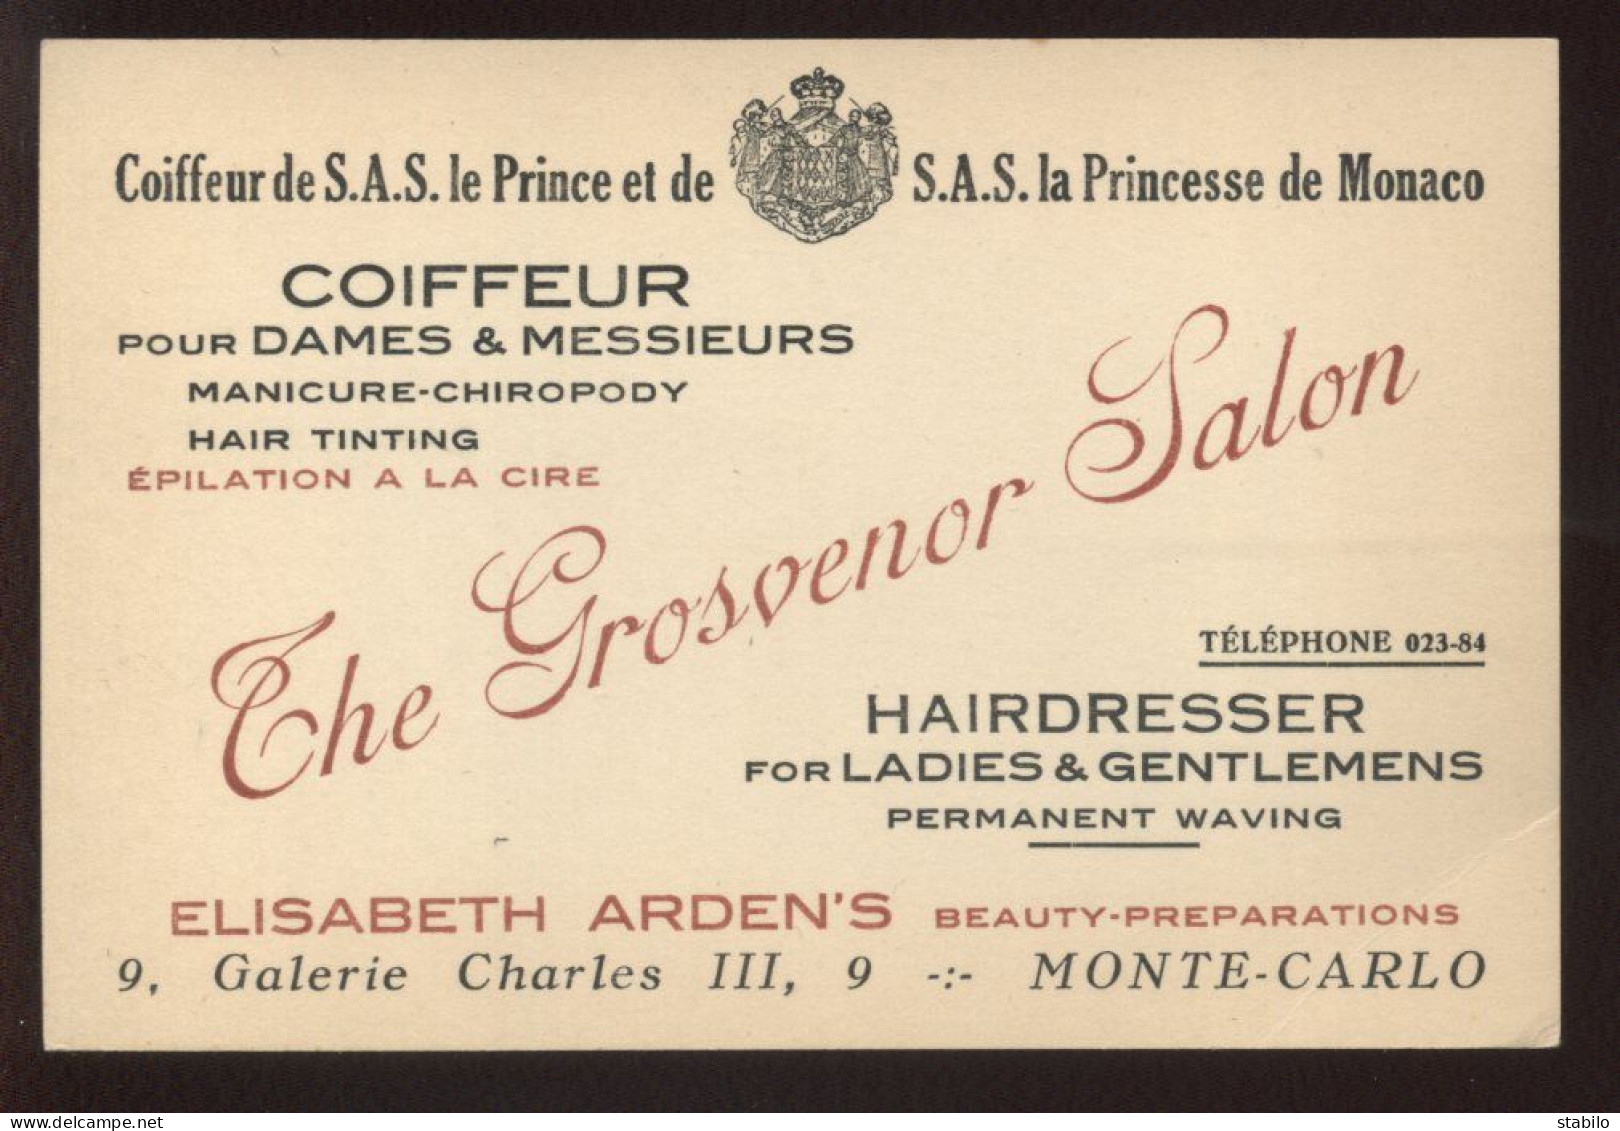 COIFFEUR "THE GROSVENOR SALON"  9 GALERIE CHARLES III, MONTE-CARLO - PRINCIPAUTE DE MONACO - Visitekaartjes